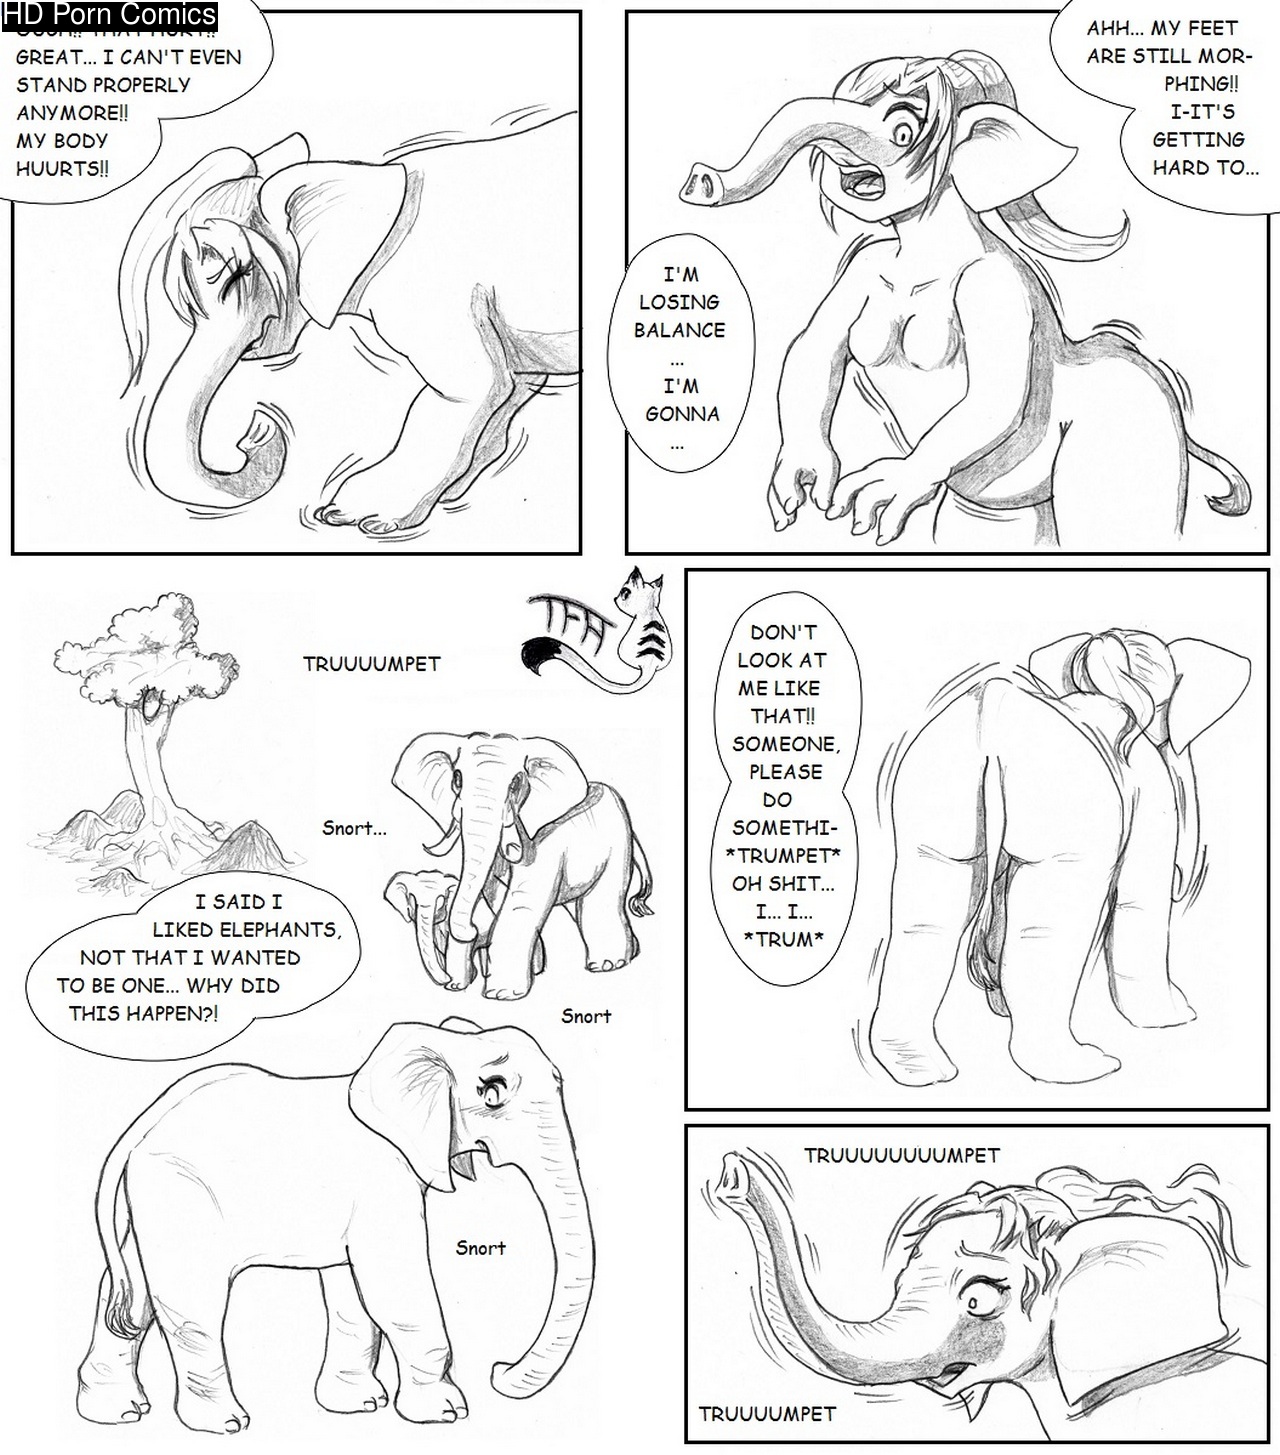 Sex Girl Elephant Hd - Elephant Enclosure Reloaded comic porn - HD Porn Comics